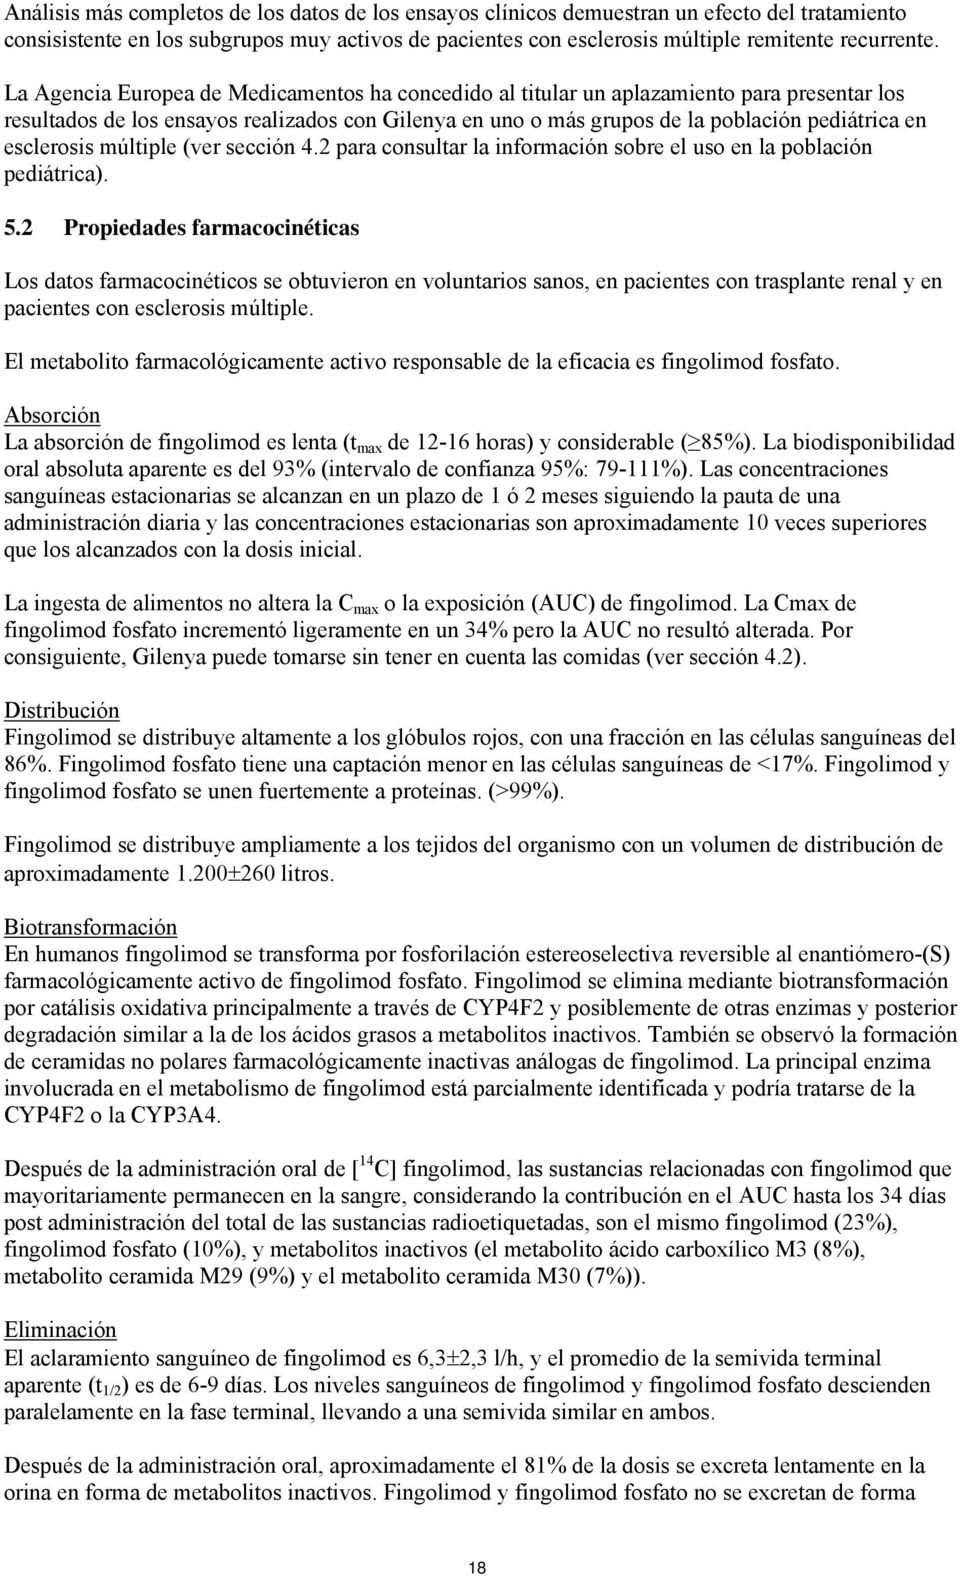 esclerosis múltiple (ver sección 4.2 para consultar la información sobre el uso en la población pediátrica). 5.